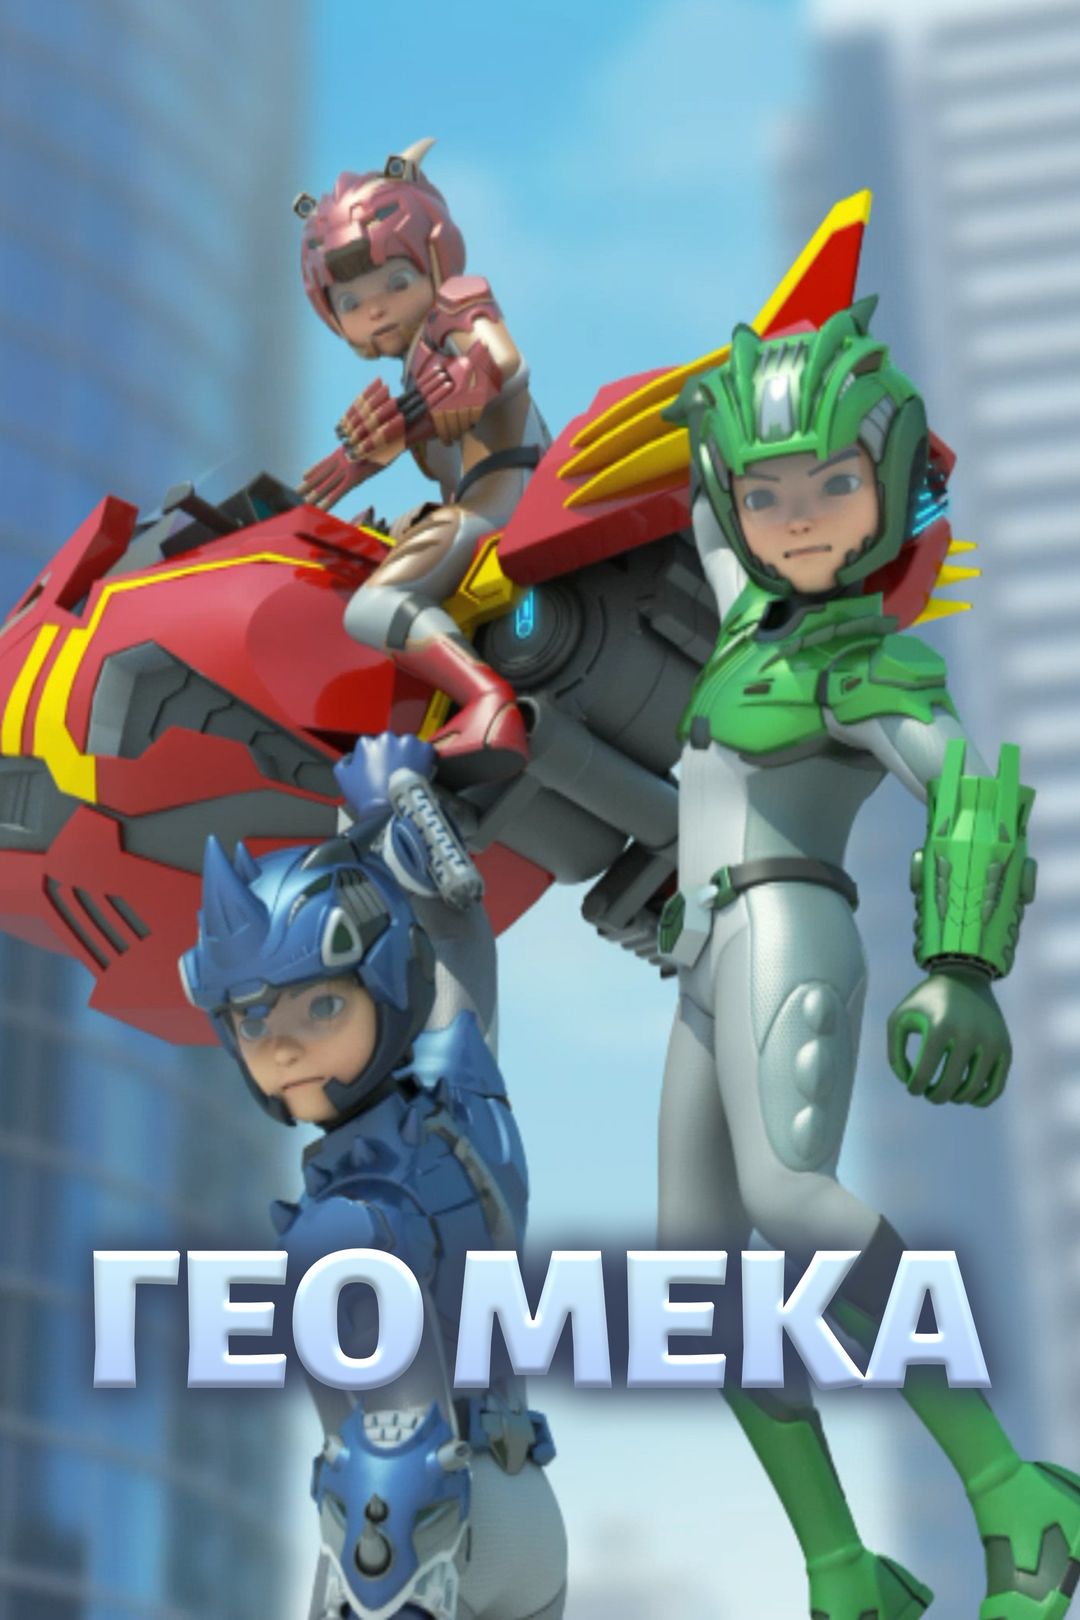 Гео Мека (1 сезон 29 серия, мультфильм) — смотреть онлайн в хорошем  качестве Full HD (1080) или HD (720)